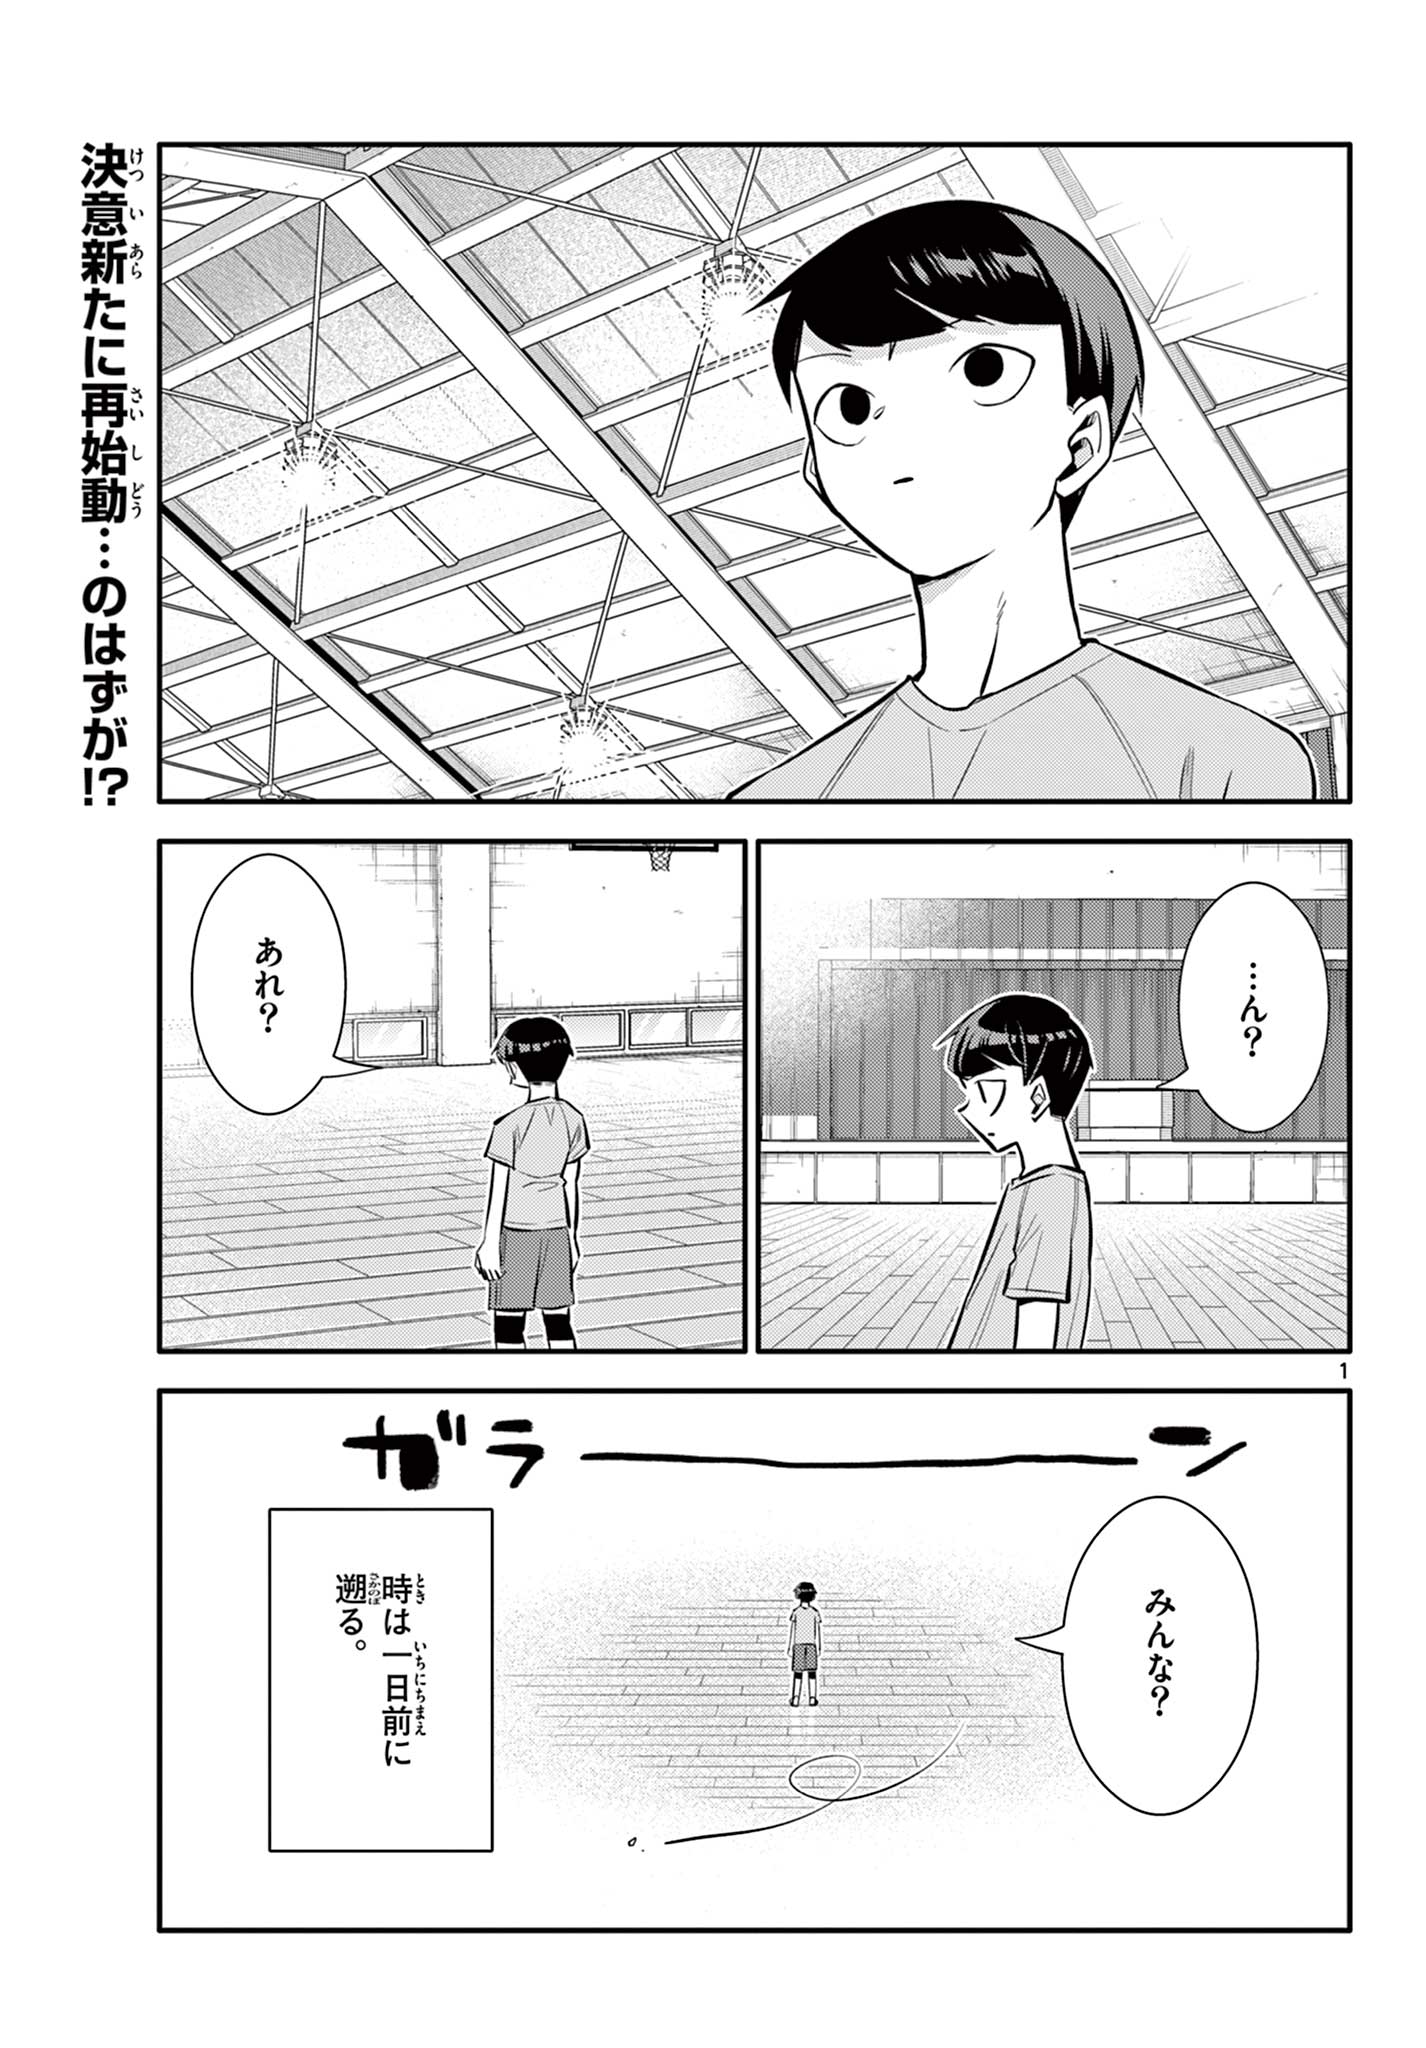 Chiisai Boku no Haru - Chapter 21 - Page 1